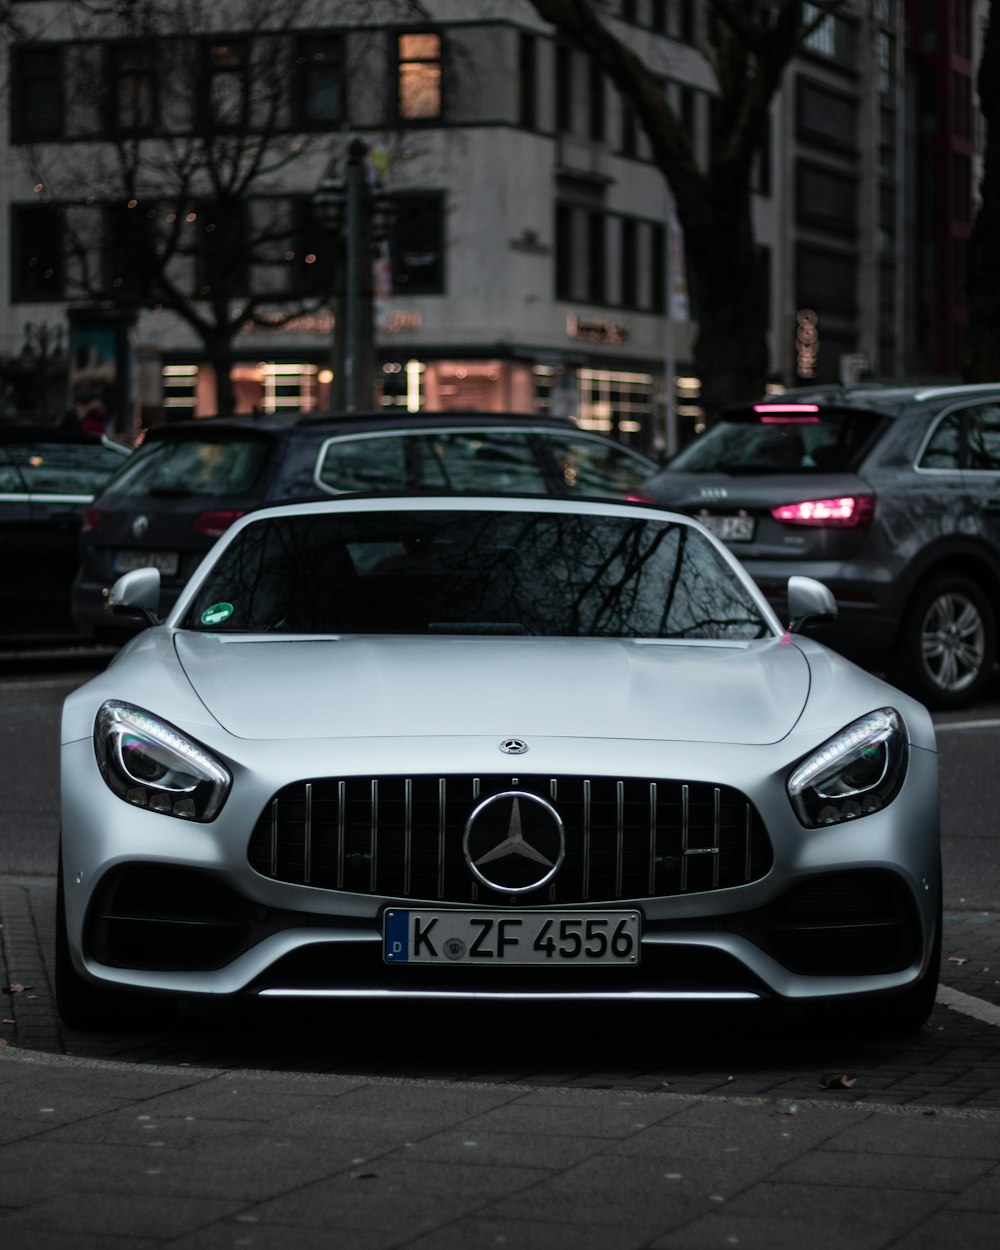 gray Mercedes-Benz car